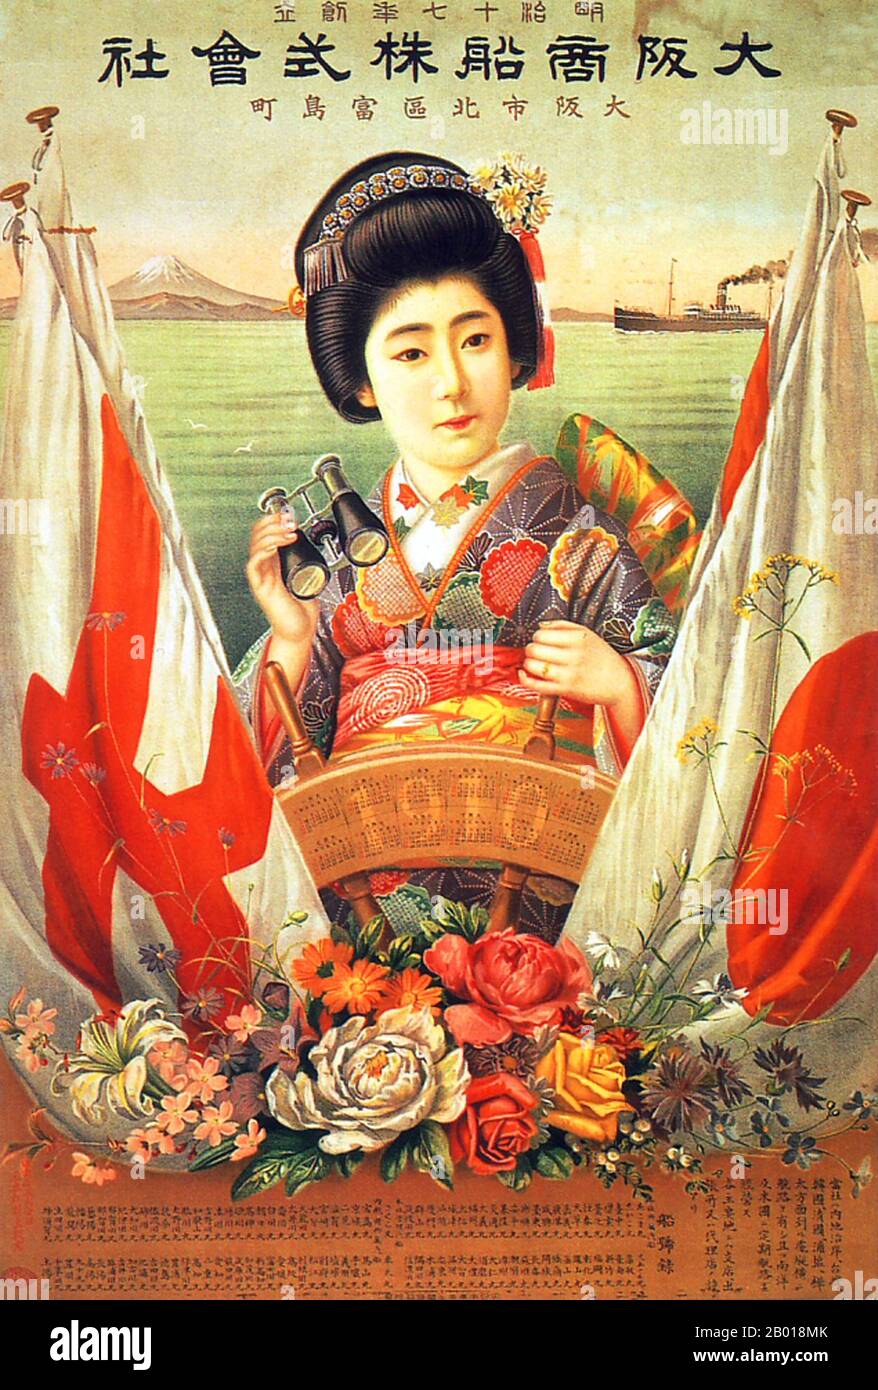 Japon : affiche publicitaire pour la société Osaka Mercantile Steamship, 1909. Osaka Mercantile Steamship Co., affiche présentant une femme vêtue de kimono avec une paire de jumelles. La tradition rencontre la modernité. Banque D'Images